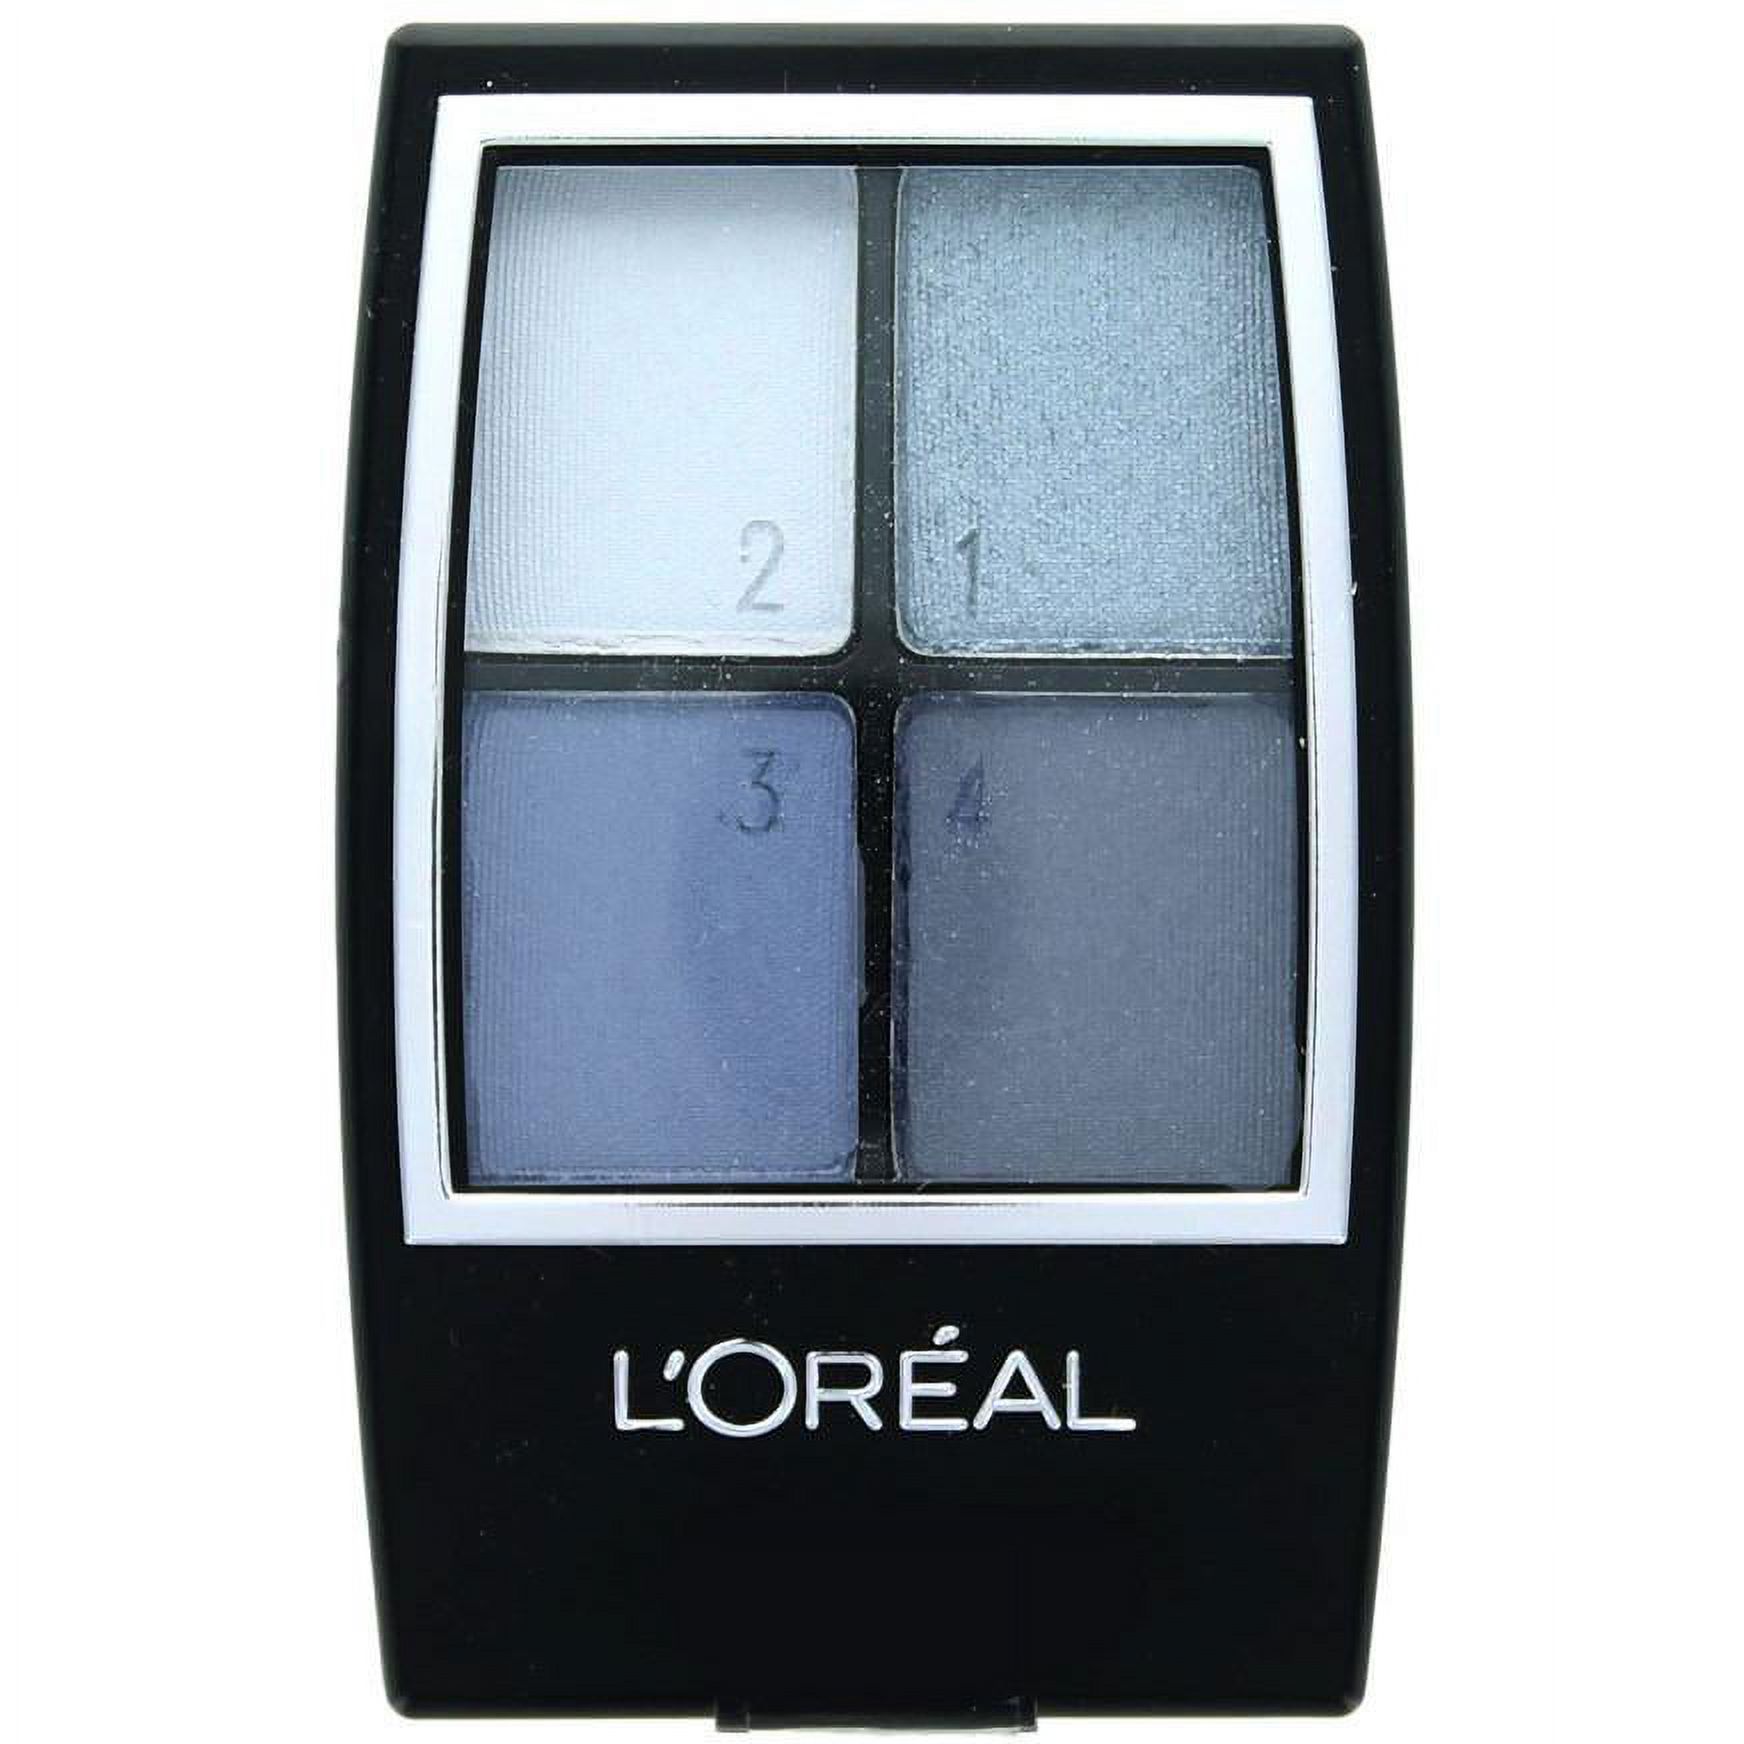 L'Oréal Paris Studio Secrets Professional Color Smokes Eyeshadow Quad, 936 Blackened Smokes, 0.16 Fl. Oz. - image 3 of 16